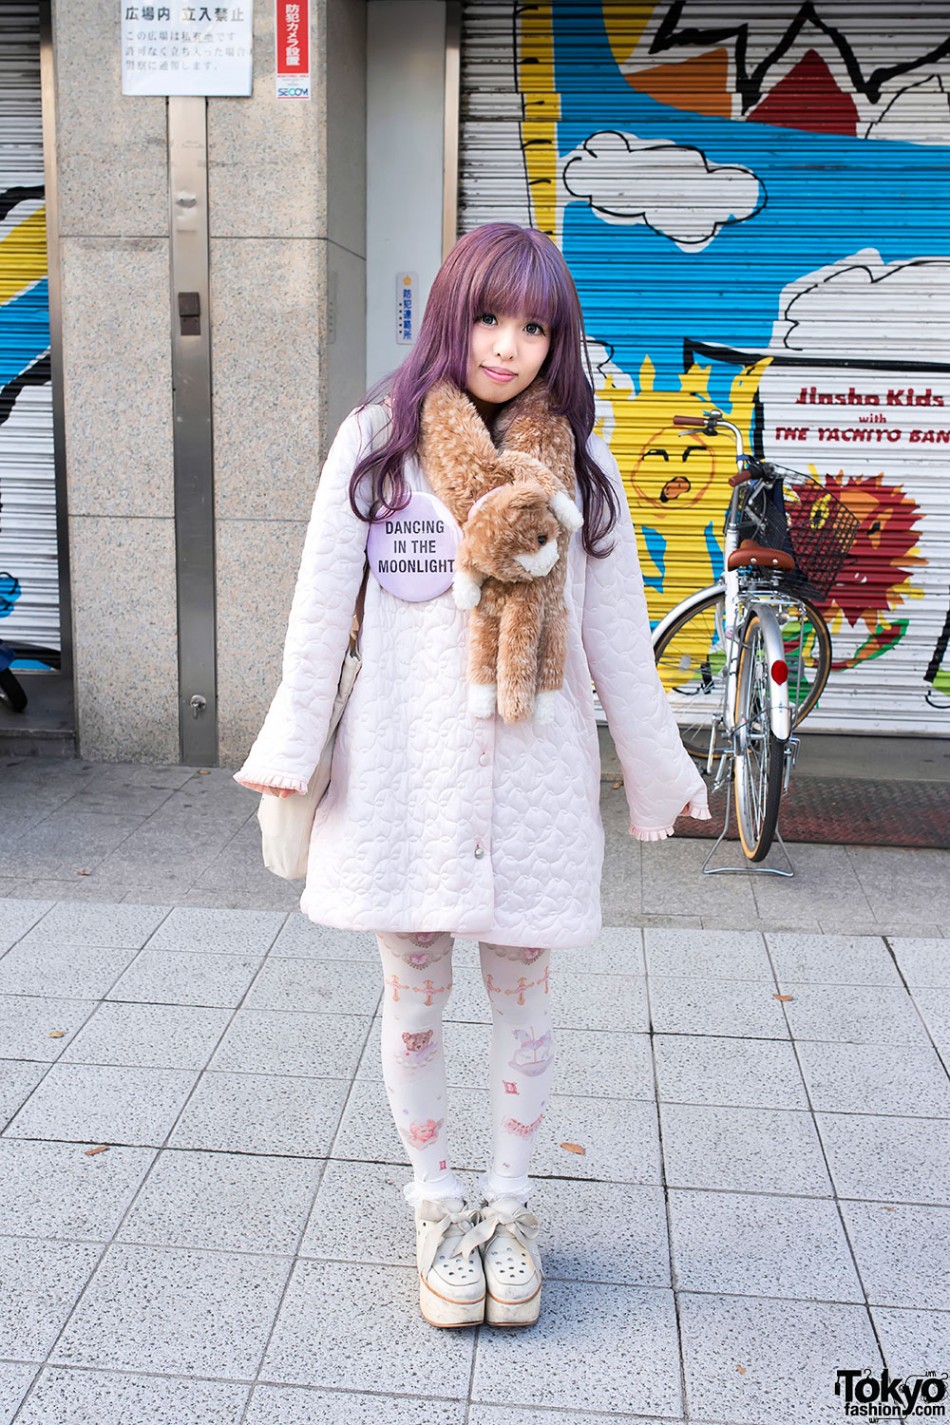 Lavender Hair, Keisuke Kanda Tote Bag & 